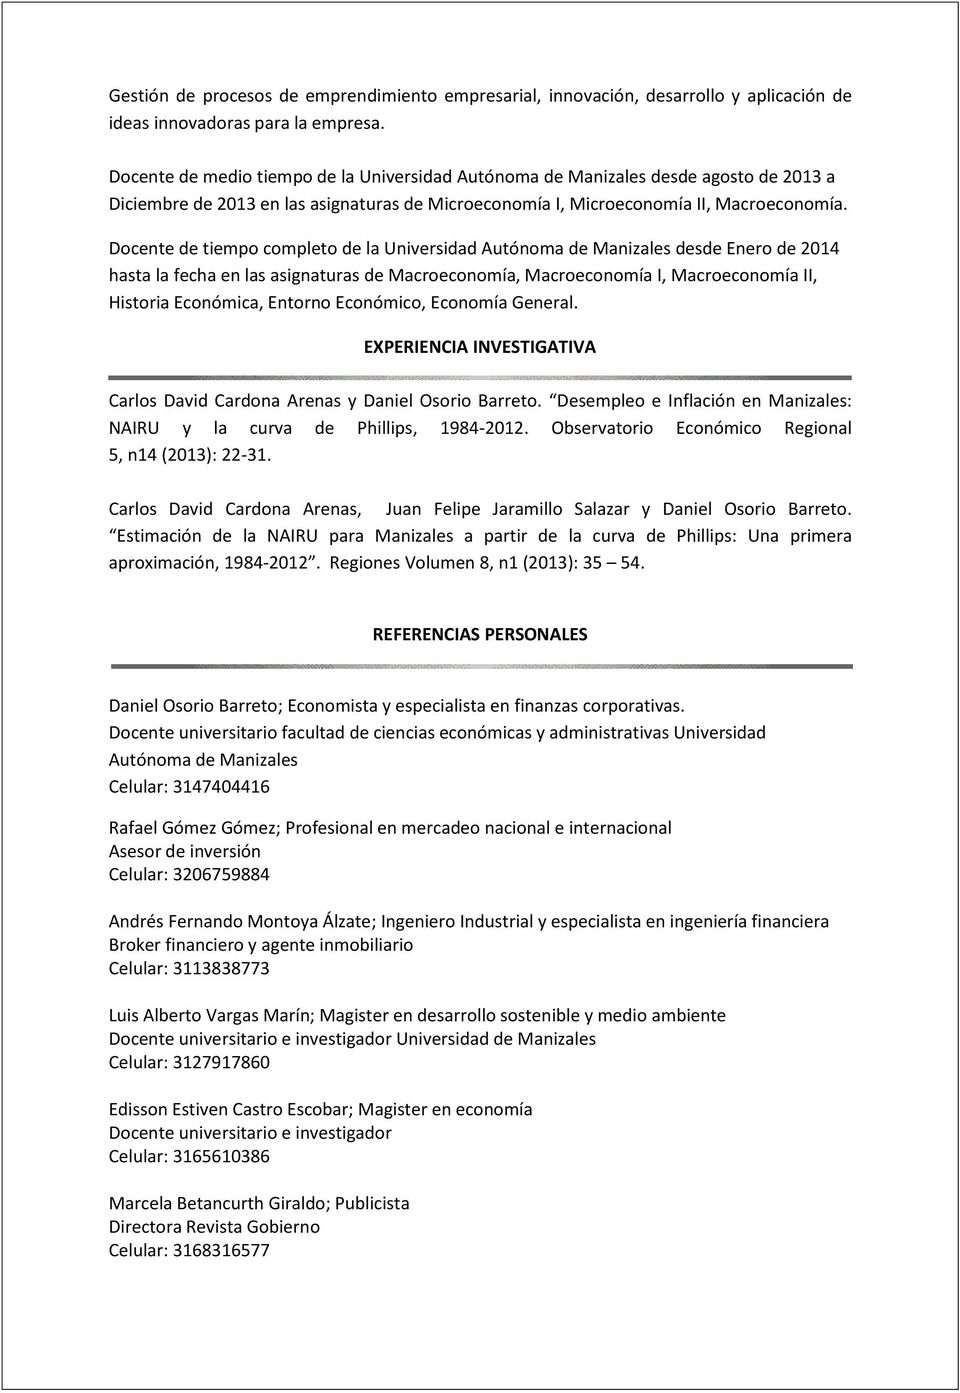 Docente de tiempo completo de la Universidad Autónoma de Manizales desde Enero de 2014 hasta la fecha en las asignaturas de Macroeconomía, Macroeconomía I, Macroeconomía II, Historia Económica,